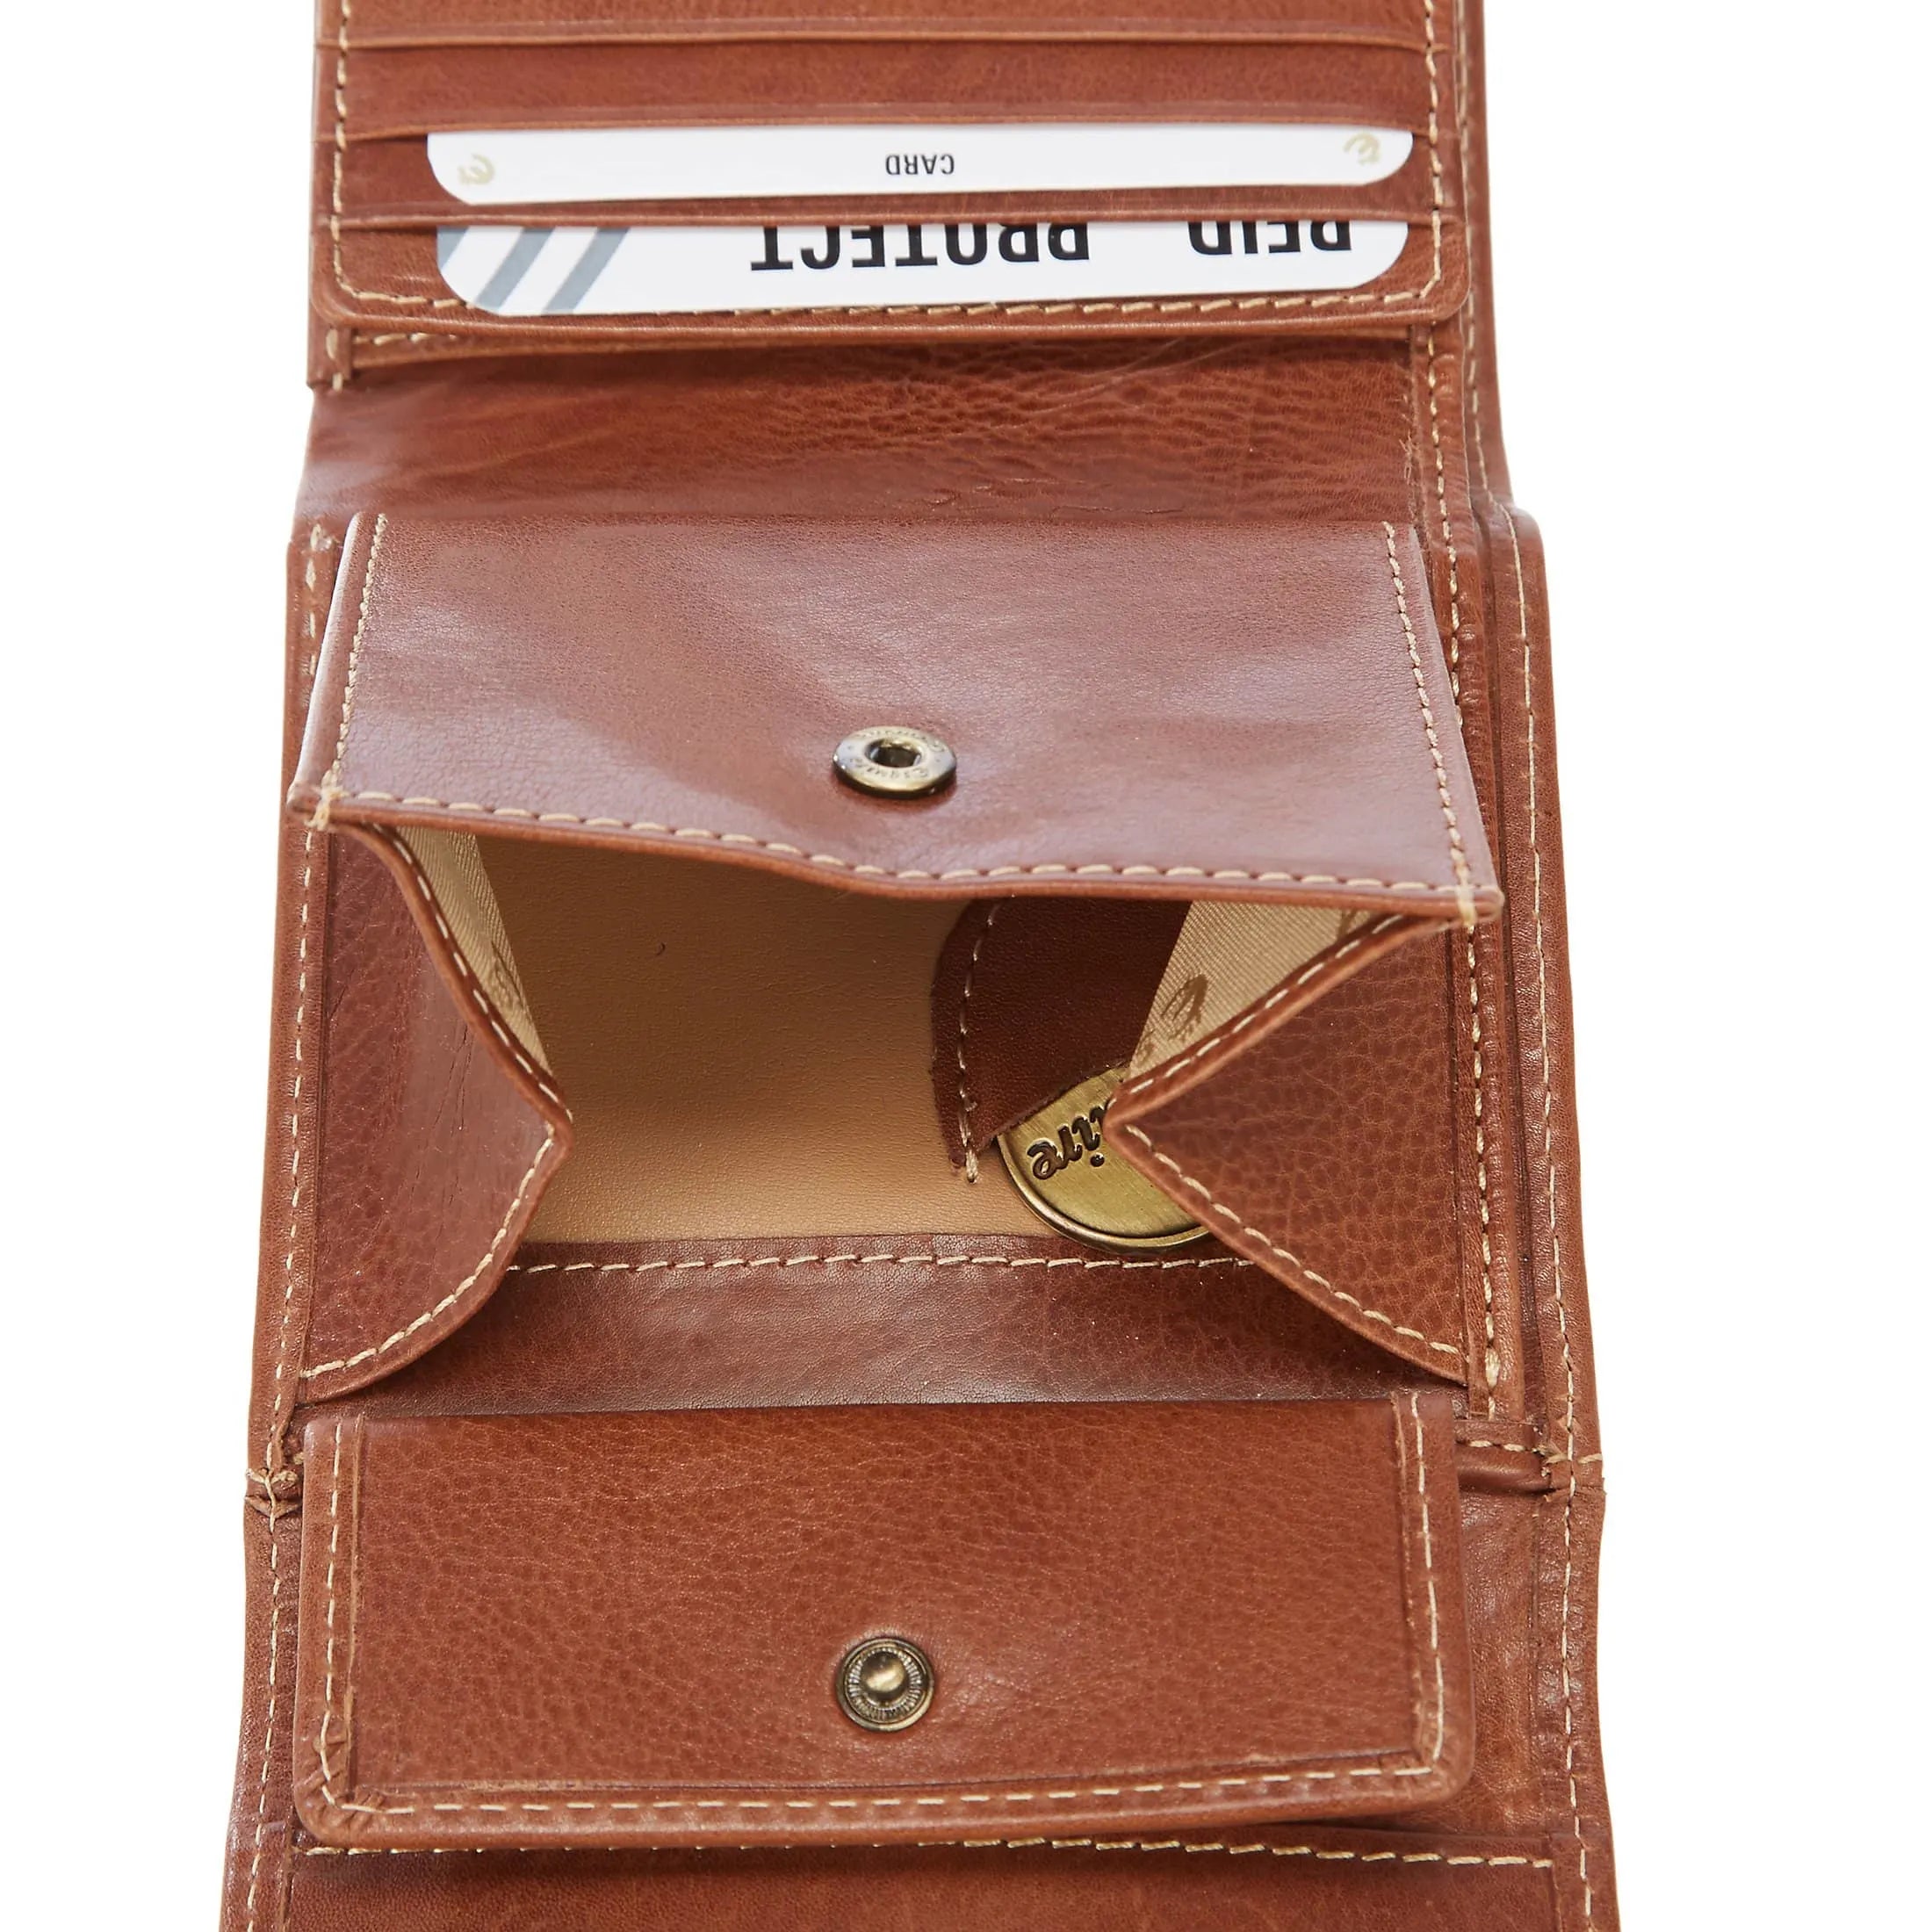 Esquire Denver RFID wallet 10 cm - cognac